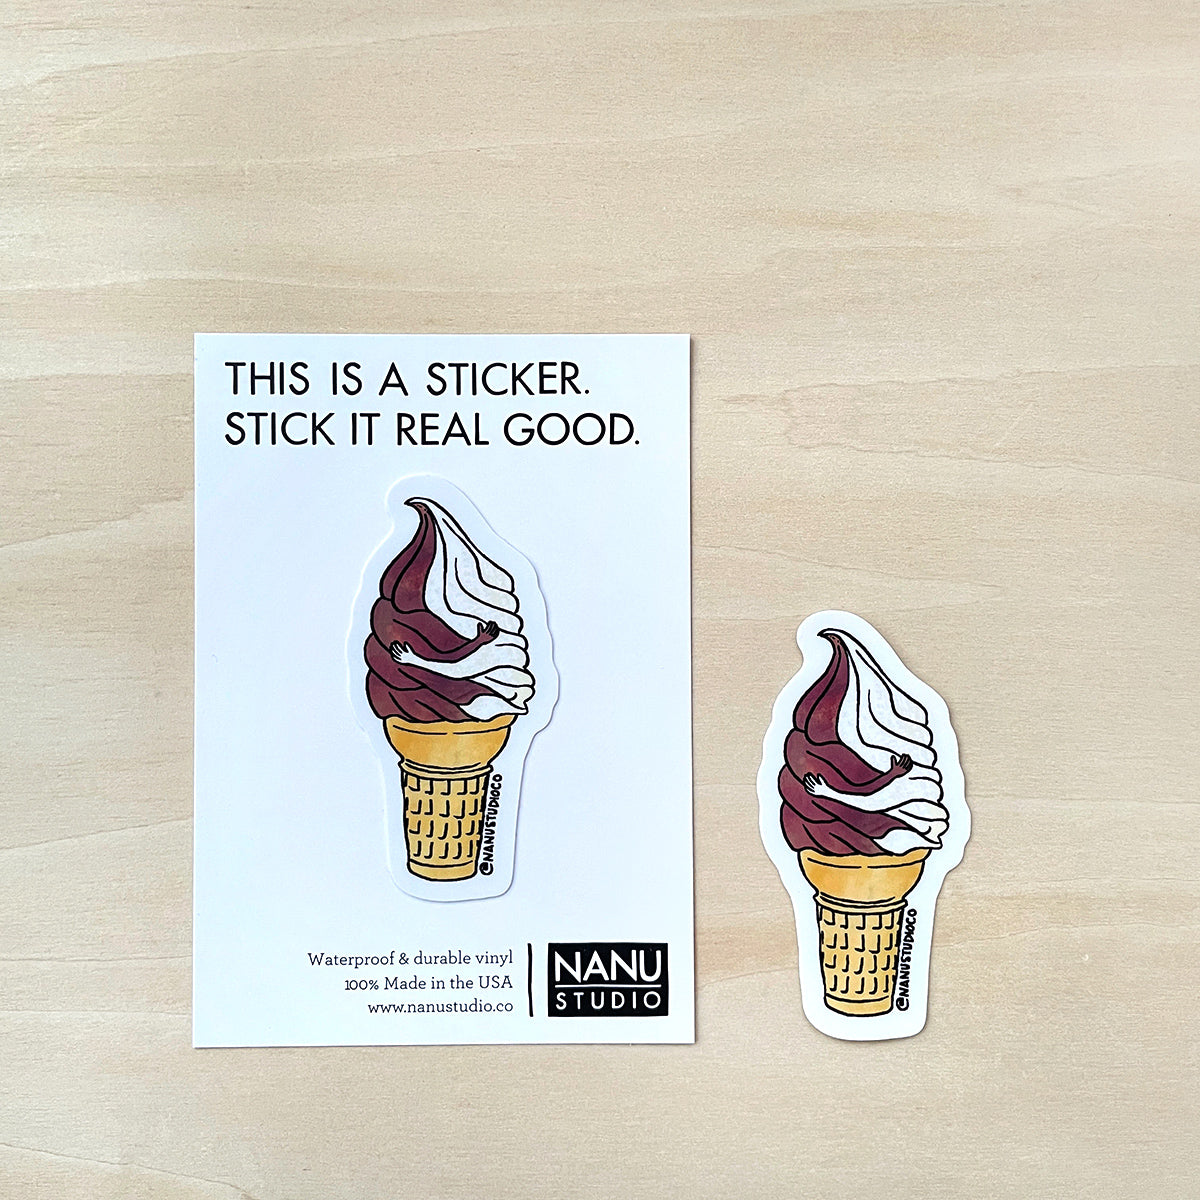 Un-cone-ditional Love - Illustrated Ice Cream Sticker